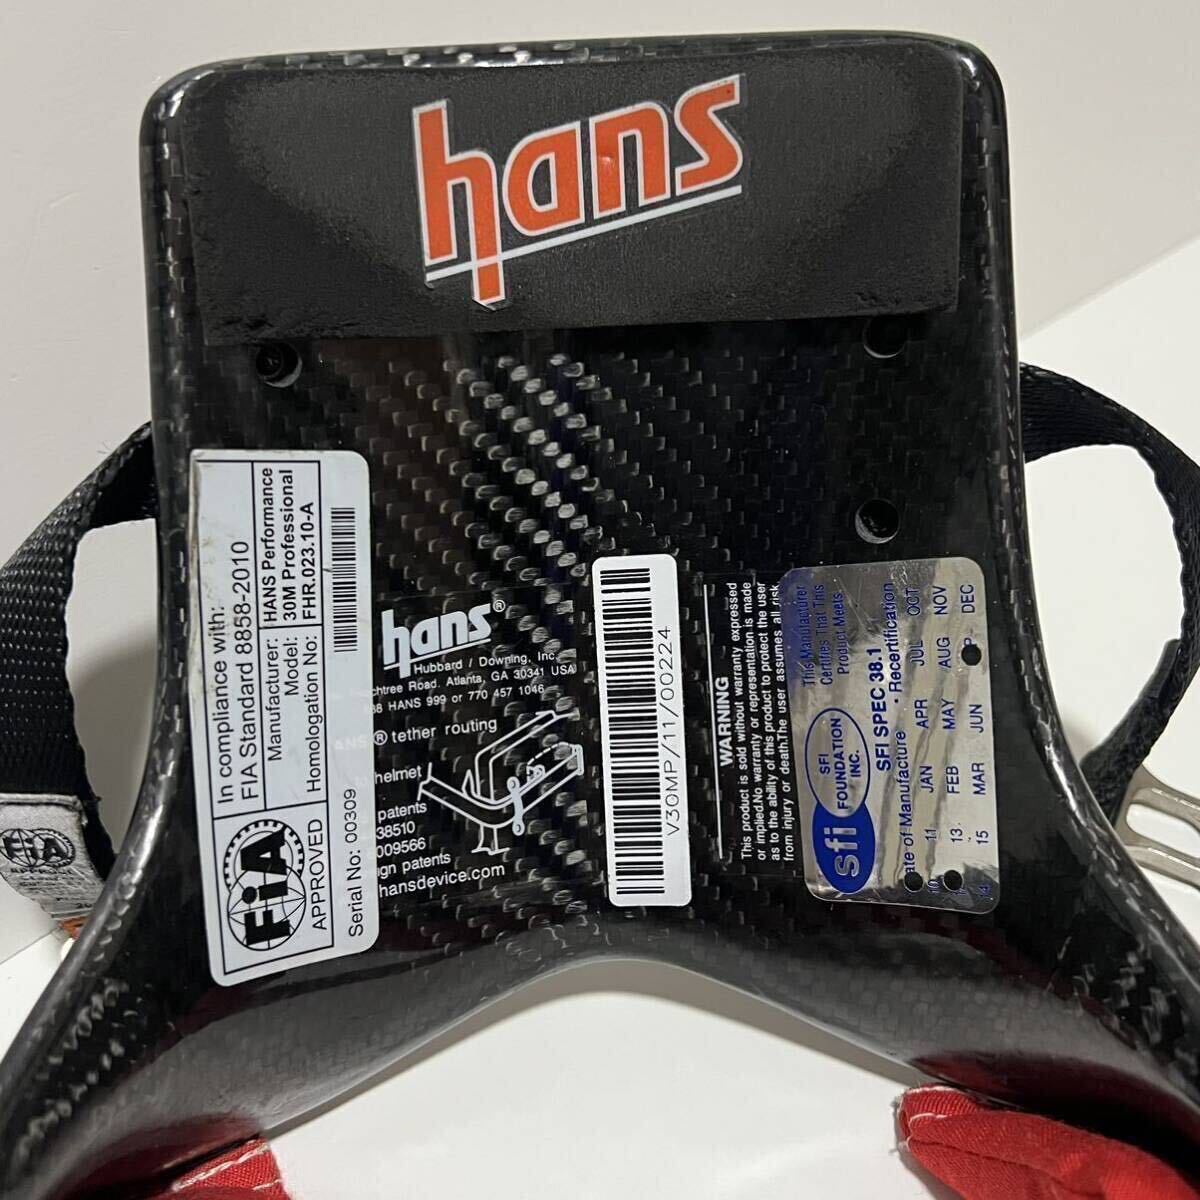 HANS ハンス社製 ハンス デバイス プロフェッショナルシリーズ カーボン デバイスパッド レッド ハンスパッドシートベルトパッドサーキットの画像6